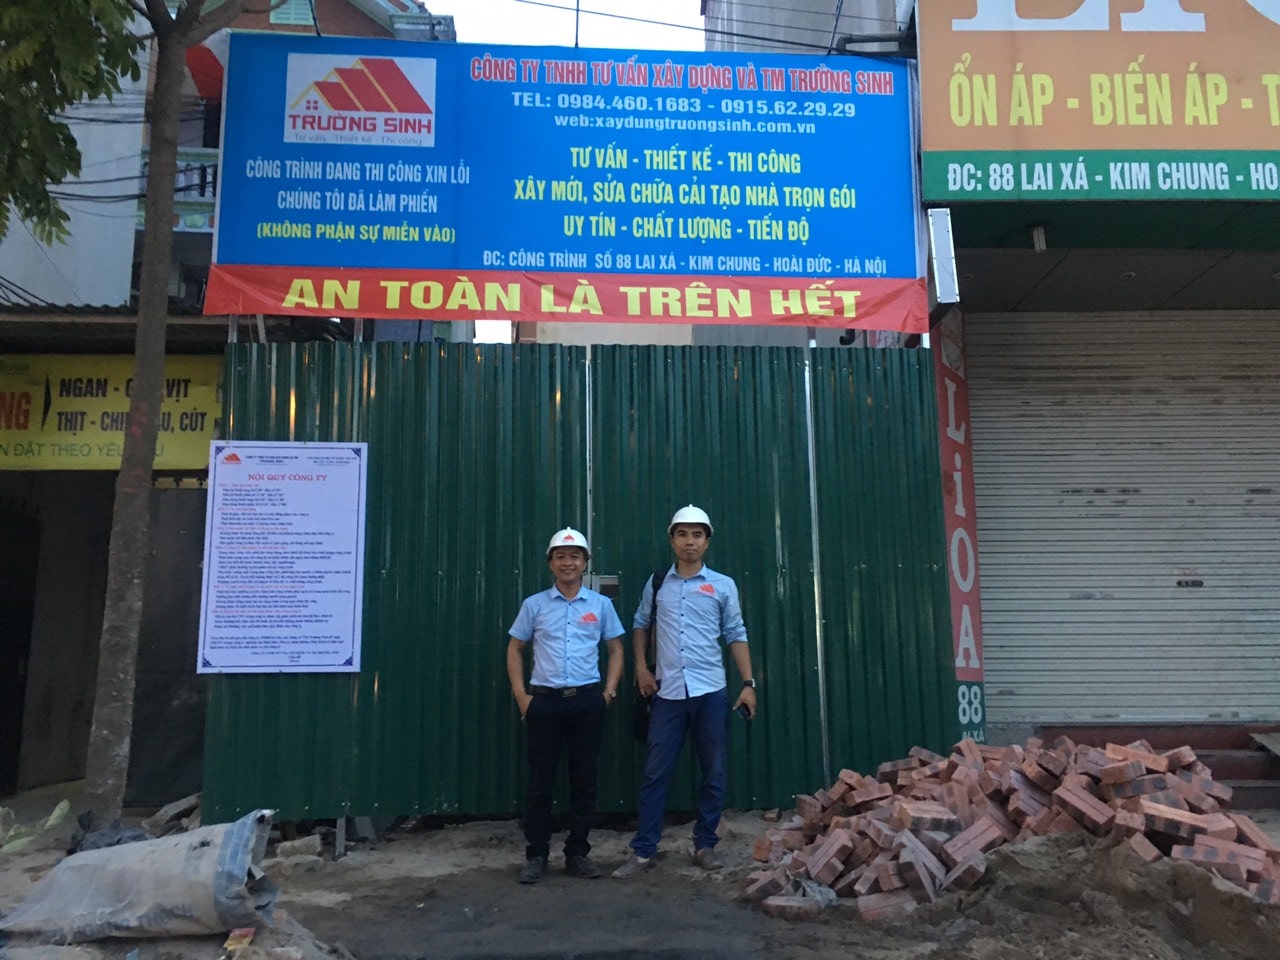 Báo giá xây nhà trọn gói tại Hà Nội Uy tín-Chất lượng-Tiến độ-1